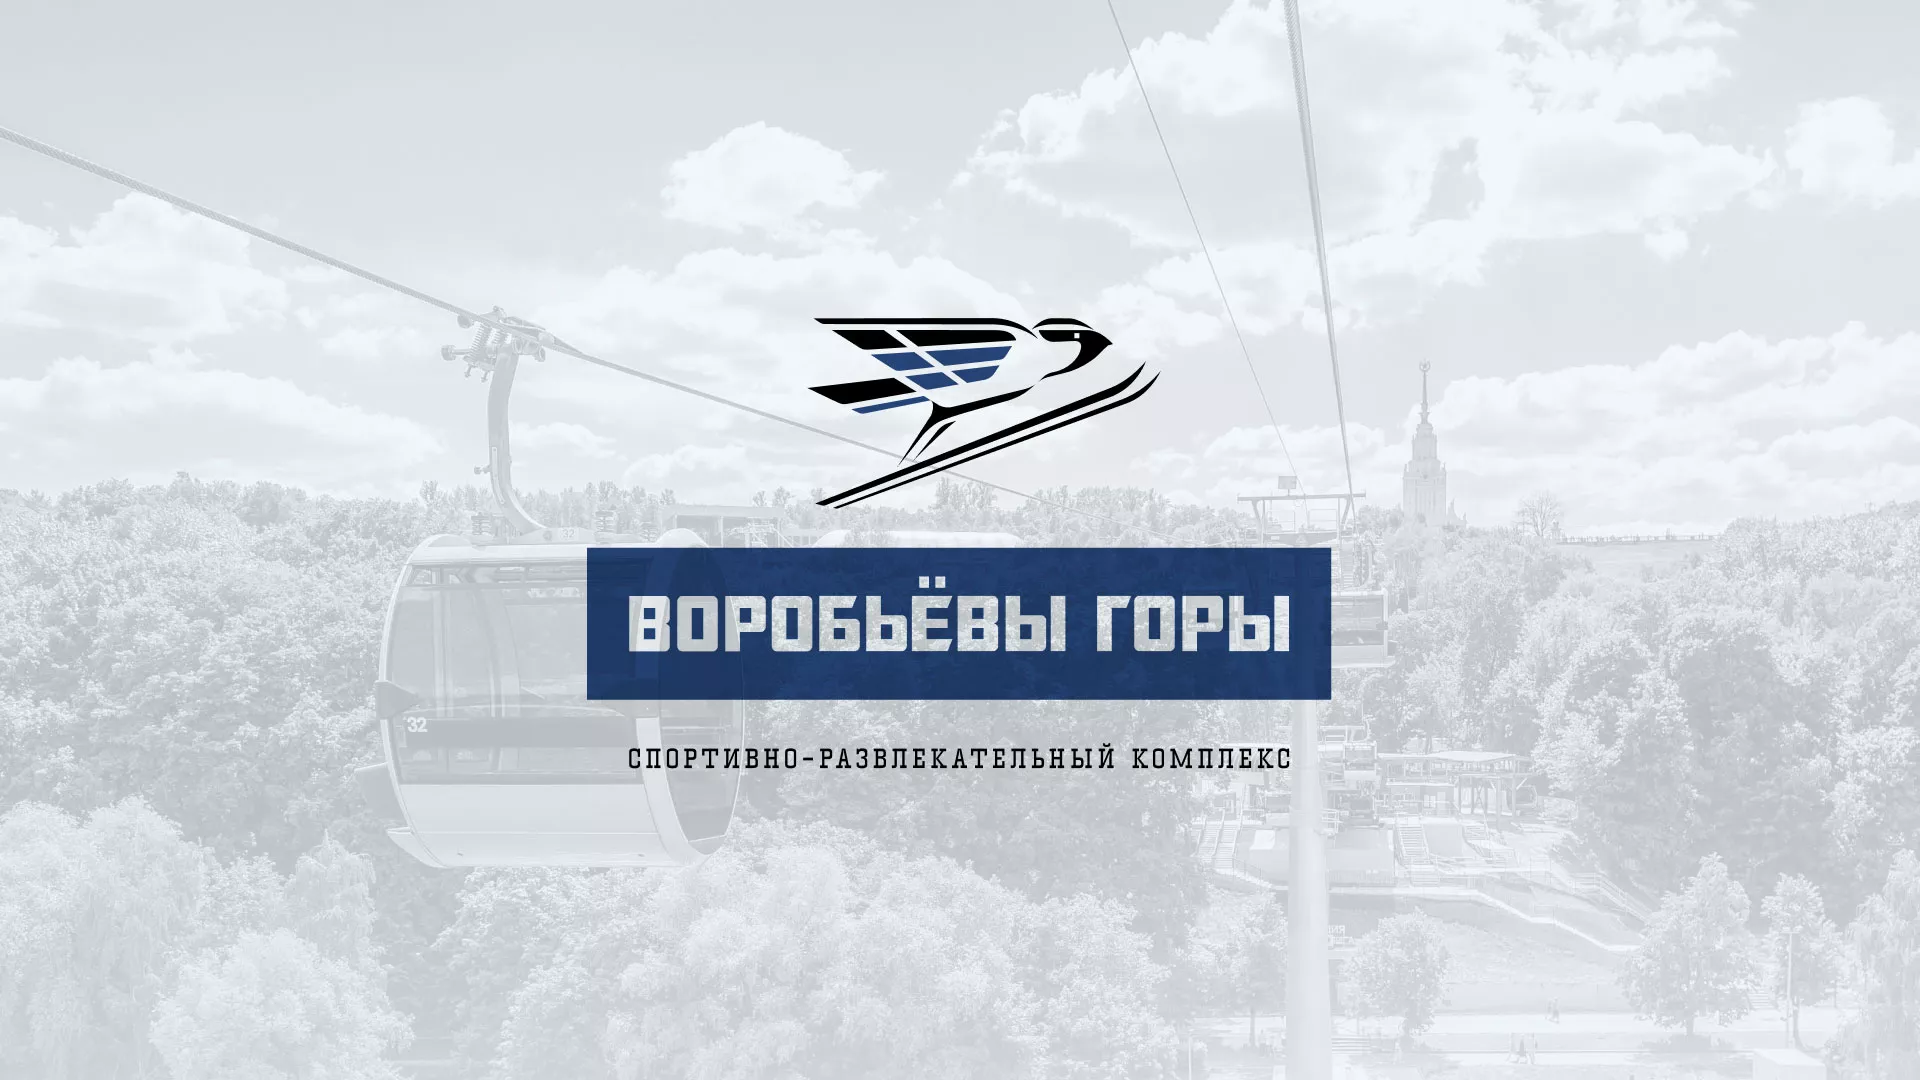 Разработка сайта в Ростове для спортивно-развлекательного комплекса «Воробьёвы горы»